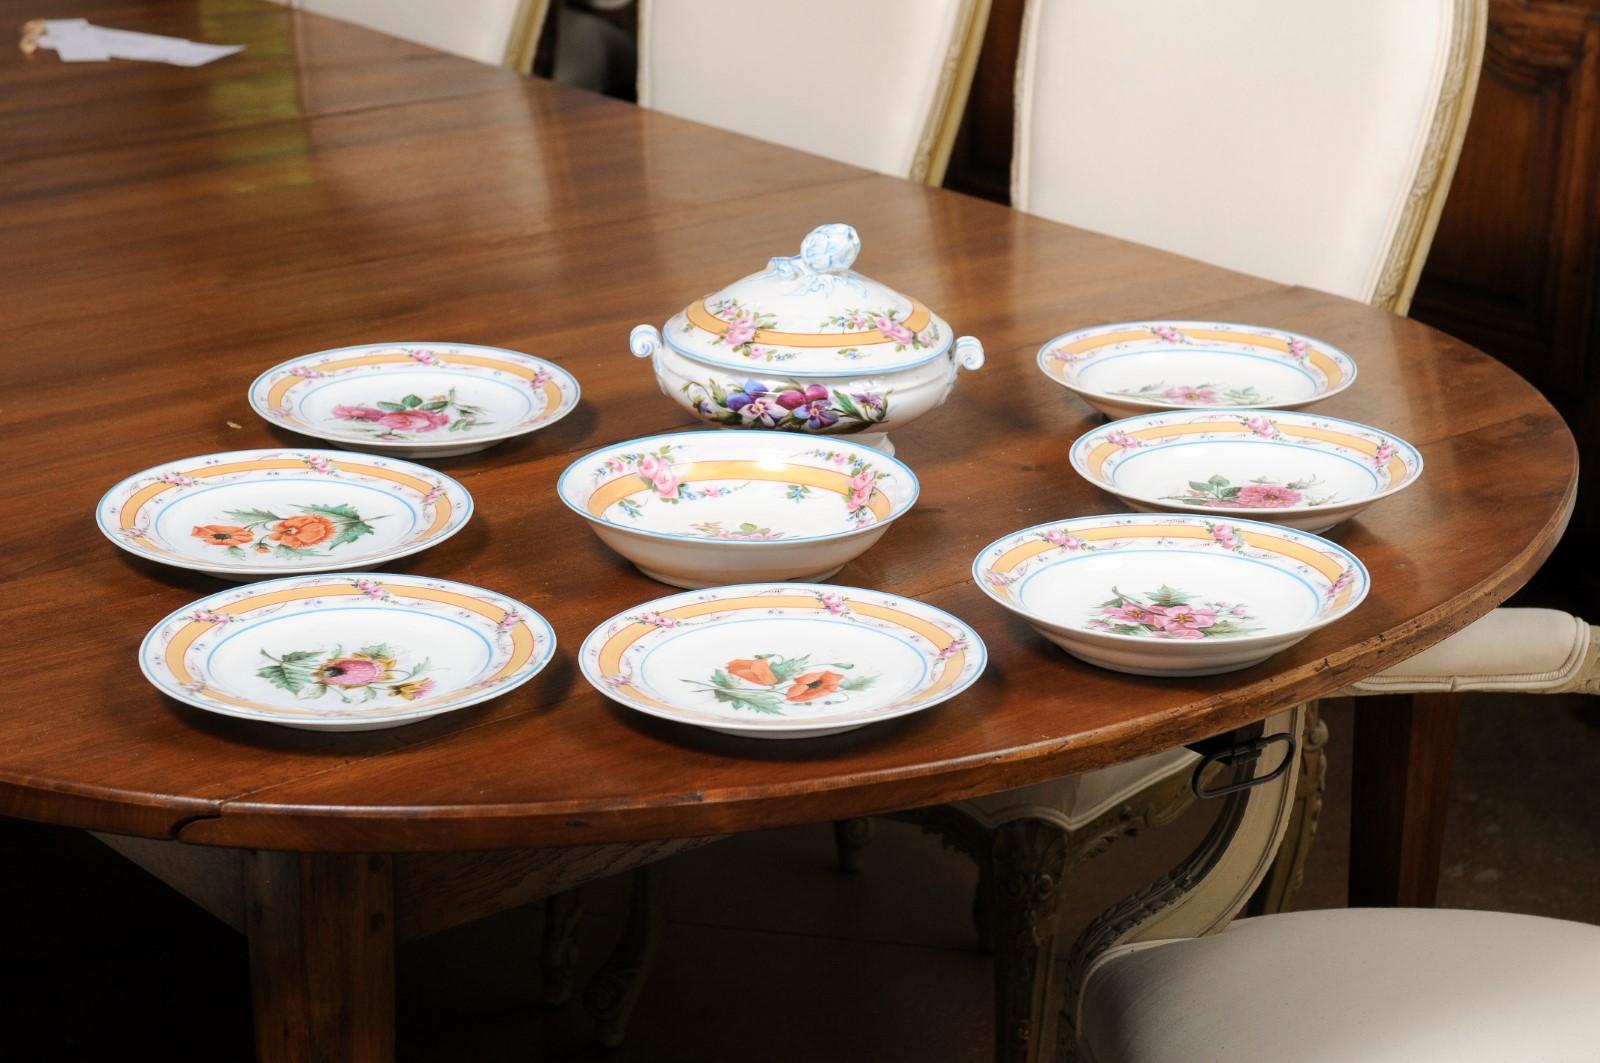 Porcelaine de Paris 19th Century Floral Dish Set with Casserole and Plates For Sale 3